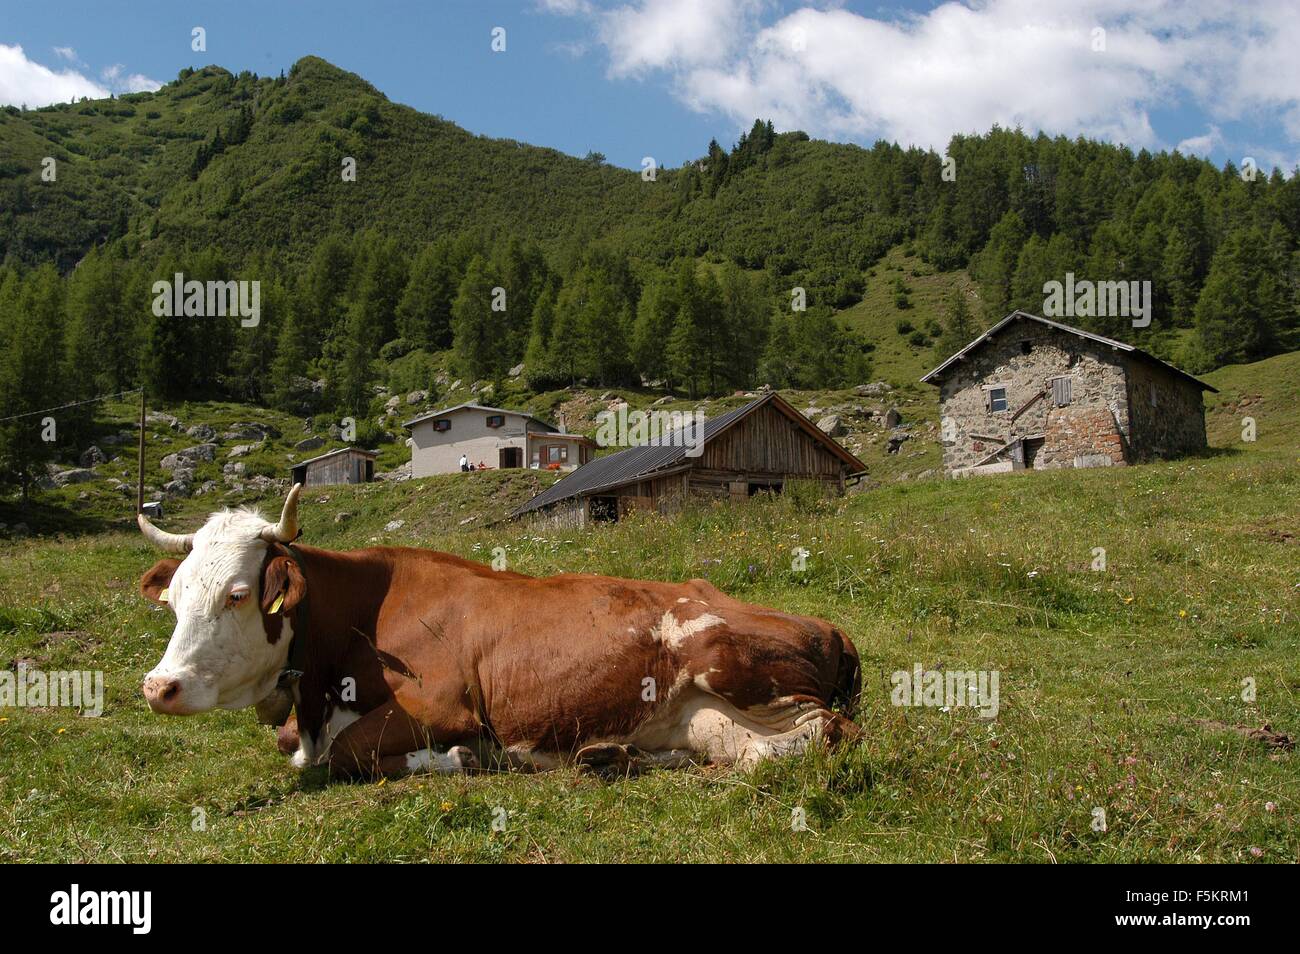 Laste di Rocca Pietore,  Agordino, Belluno,cow   Credit © Marco Bruzzo/Sintesi/Alamy Stock Photo Stock Photo